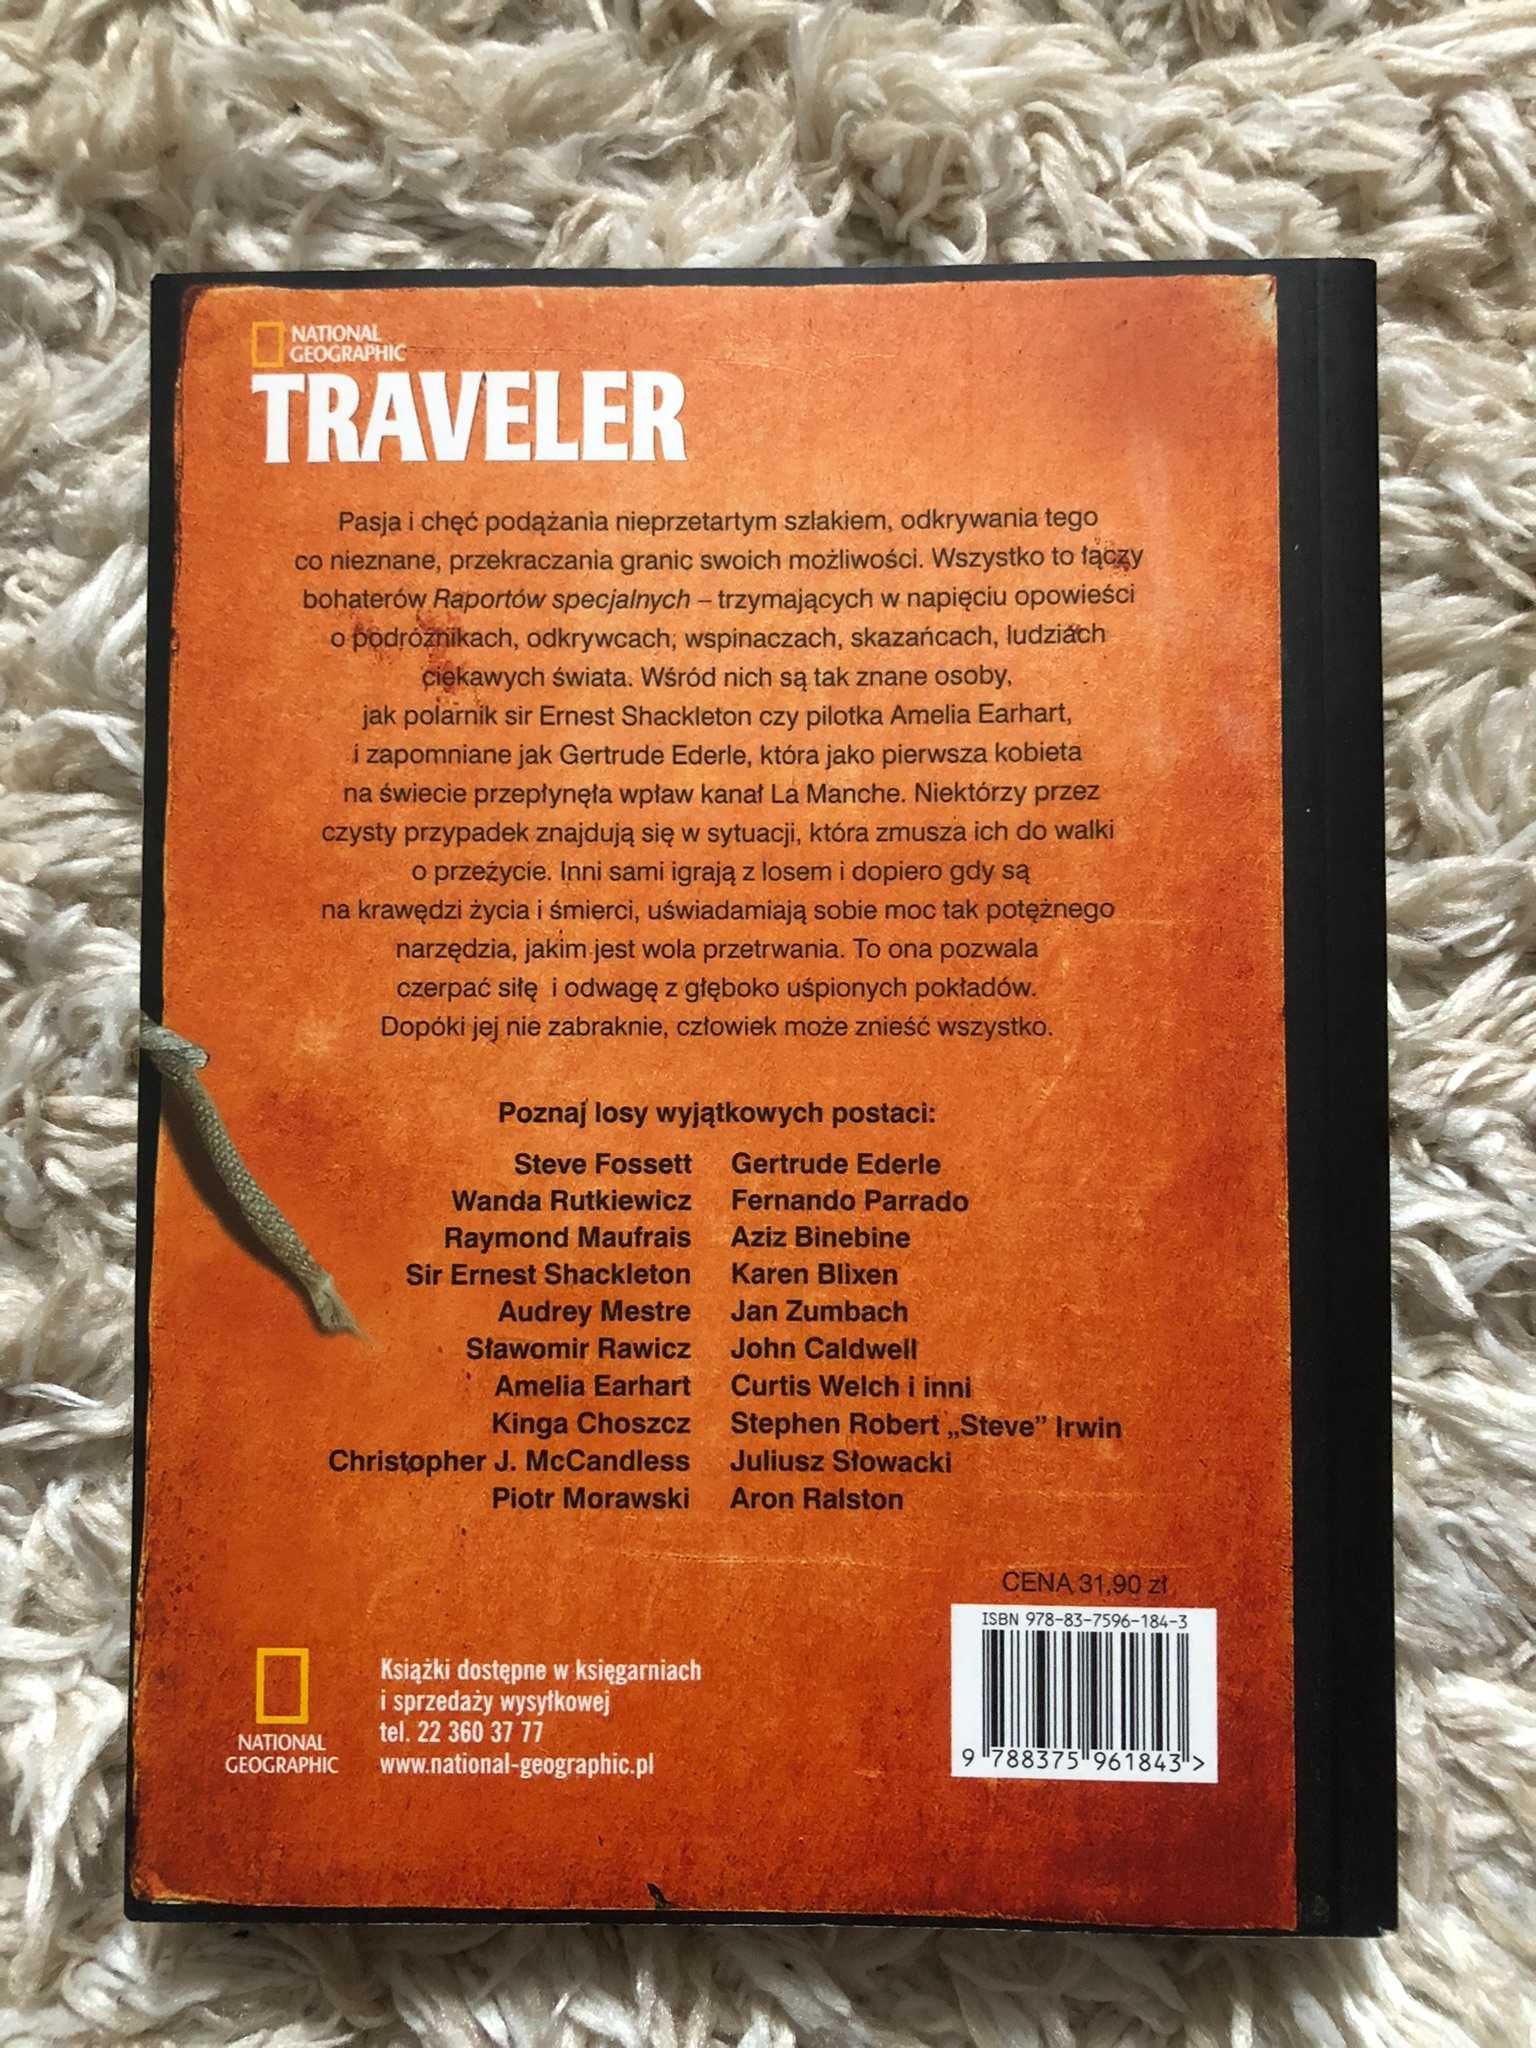 Raport specjalny. 20 Niesamowitych Historii - Traveler